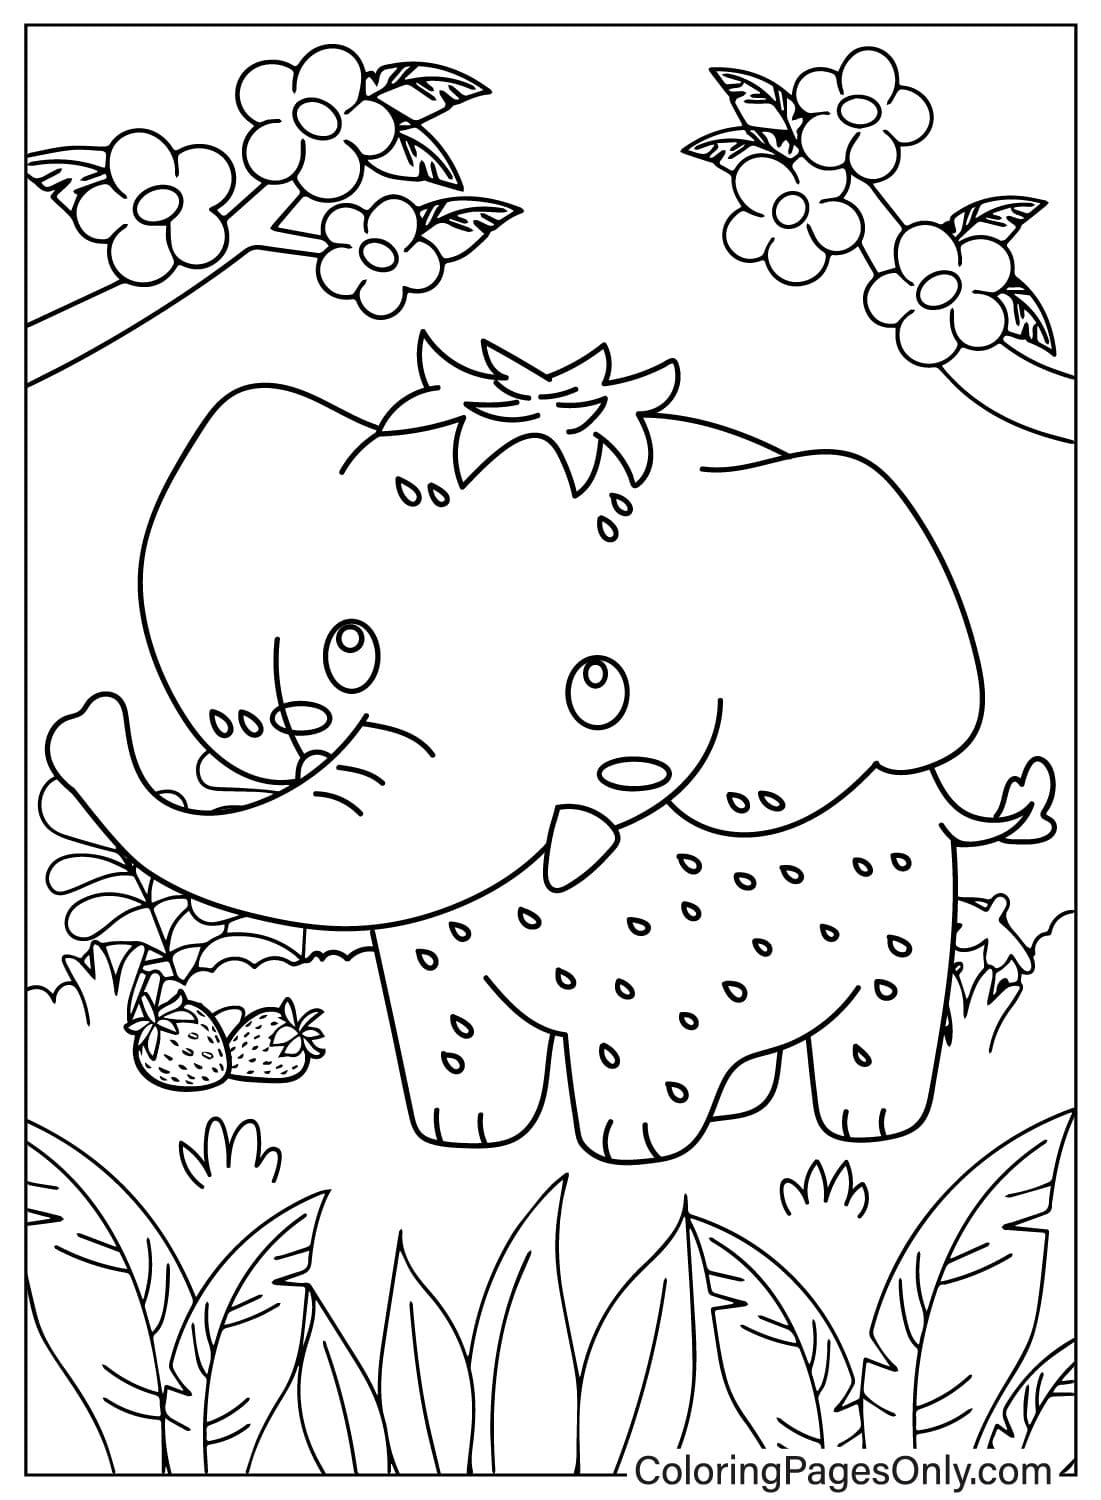 Coloriage gratuit à imprimer de Strawberry Elephant de Strawberry Elephant